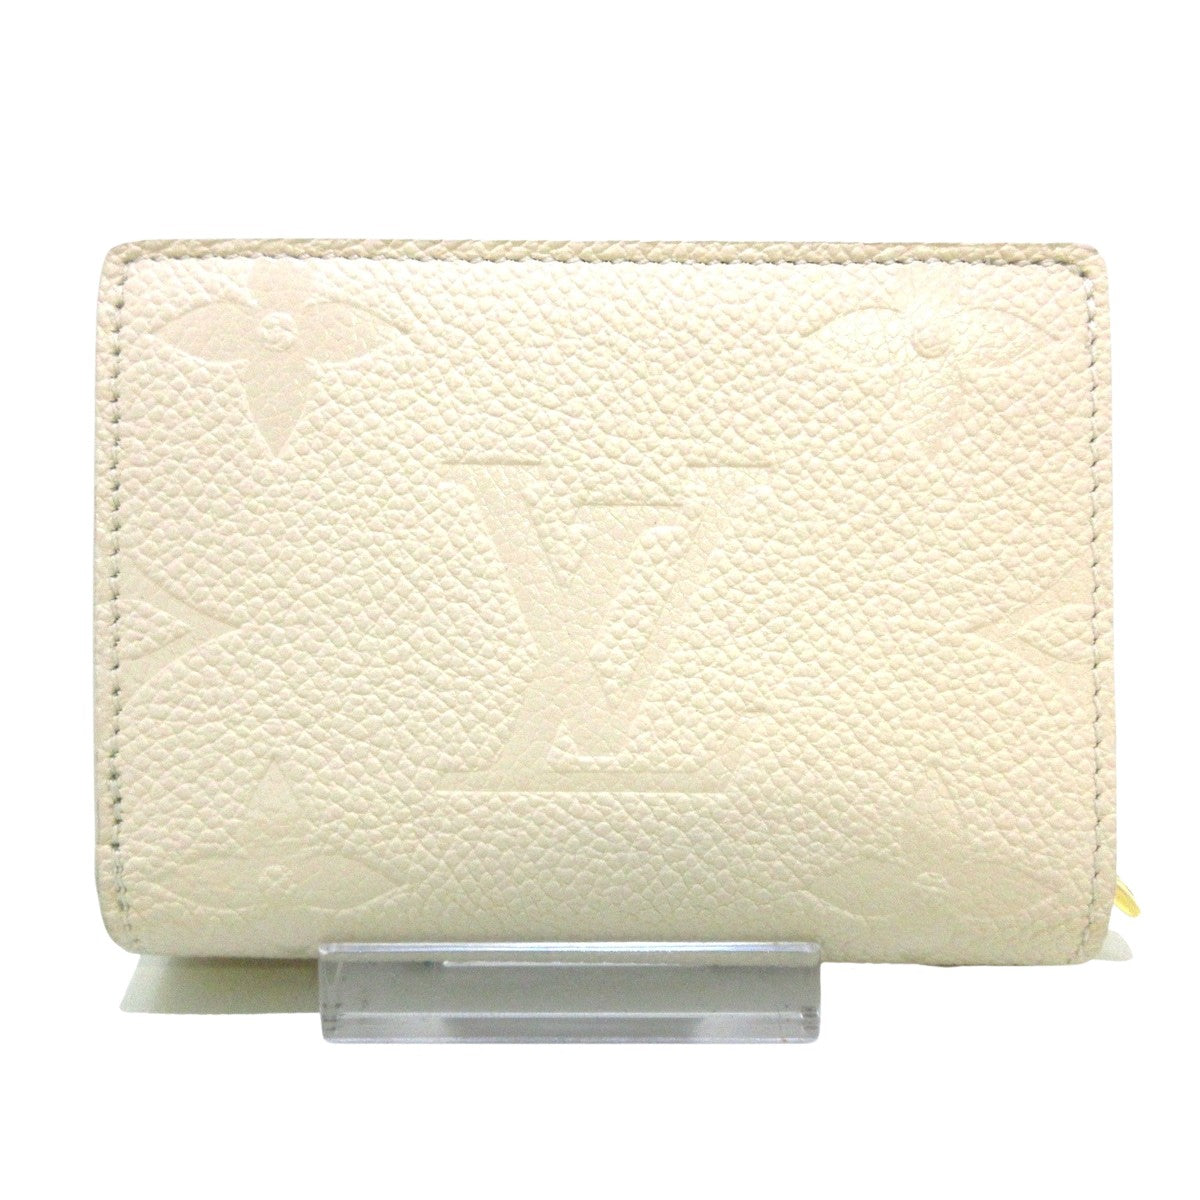 Louis Vuitton Clea Wallet